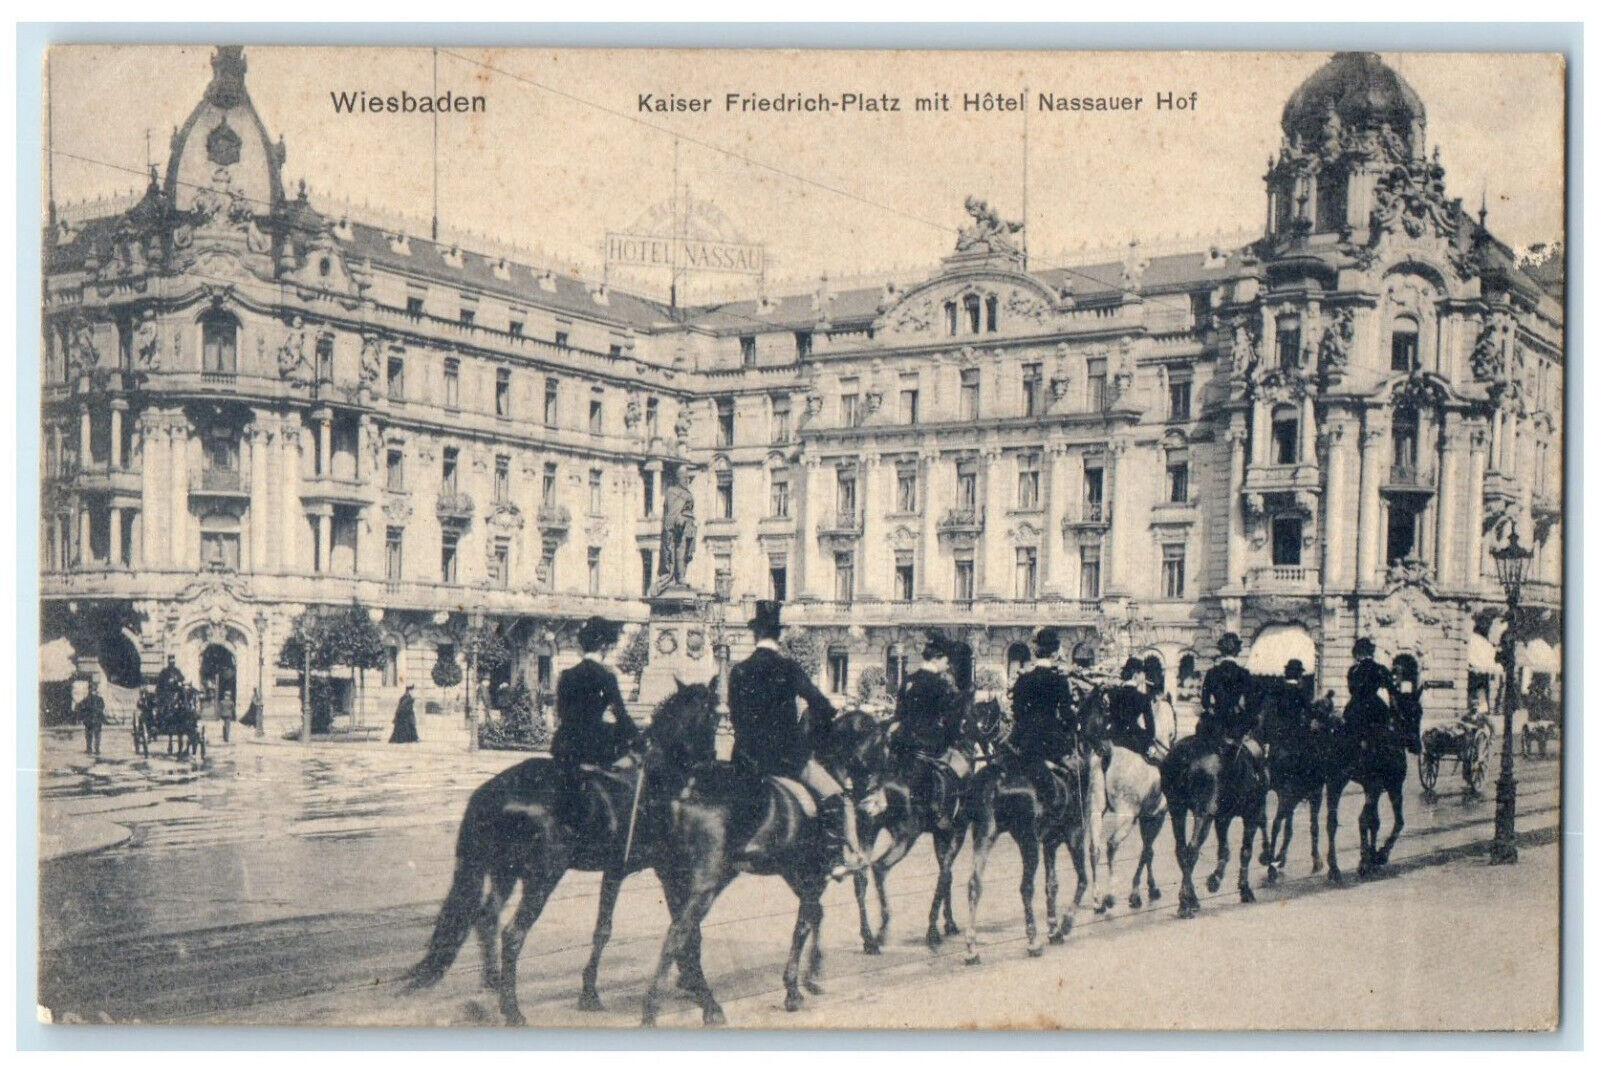 c1910 Kaiser Friedrich-Platz With Hotel Nassauer Hof Wiesbaden Germany Postcard